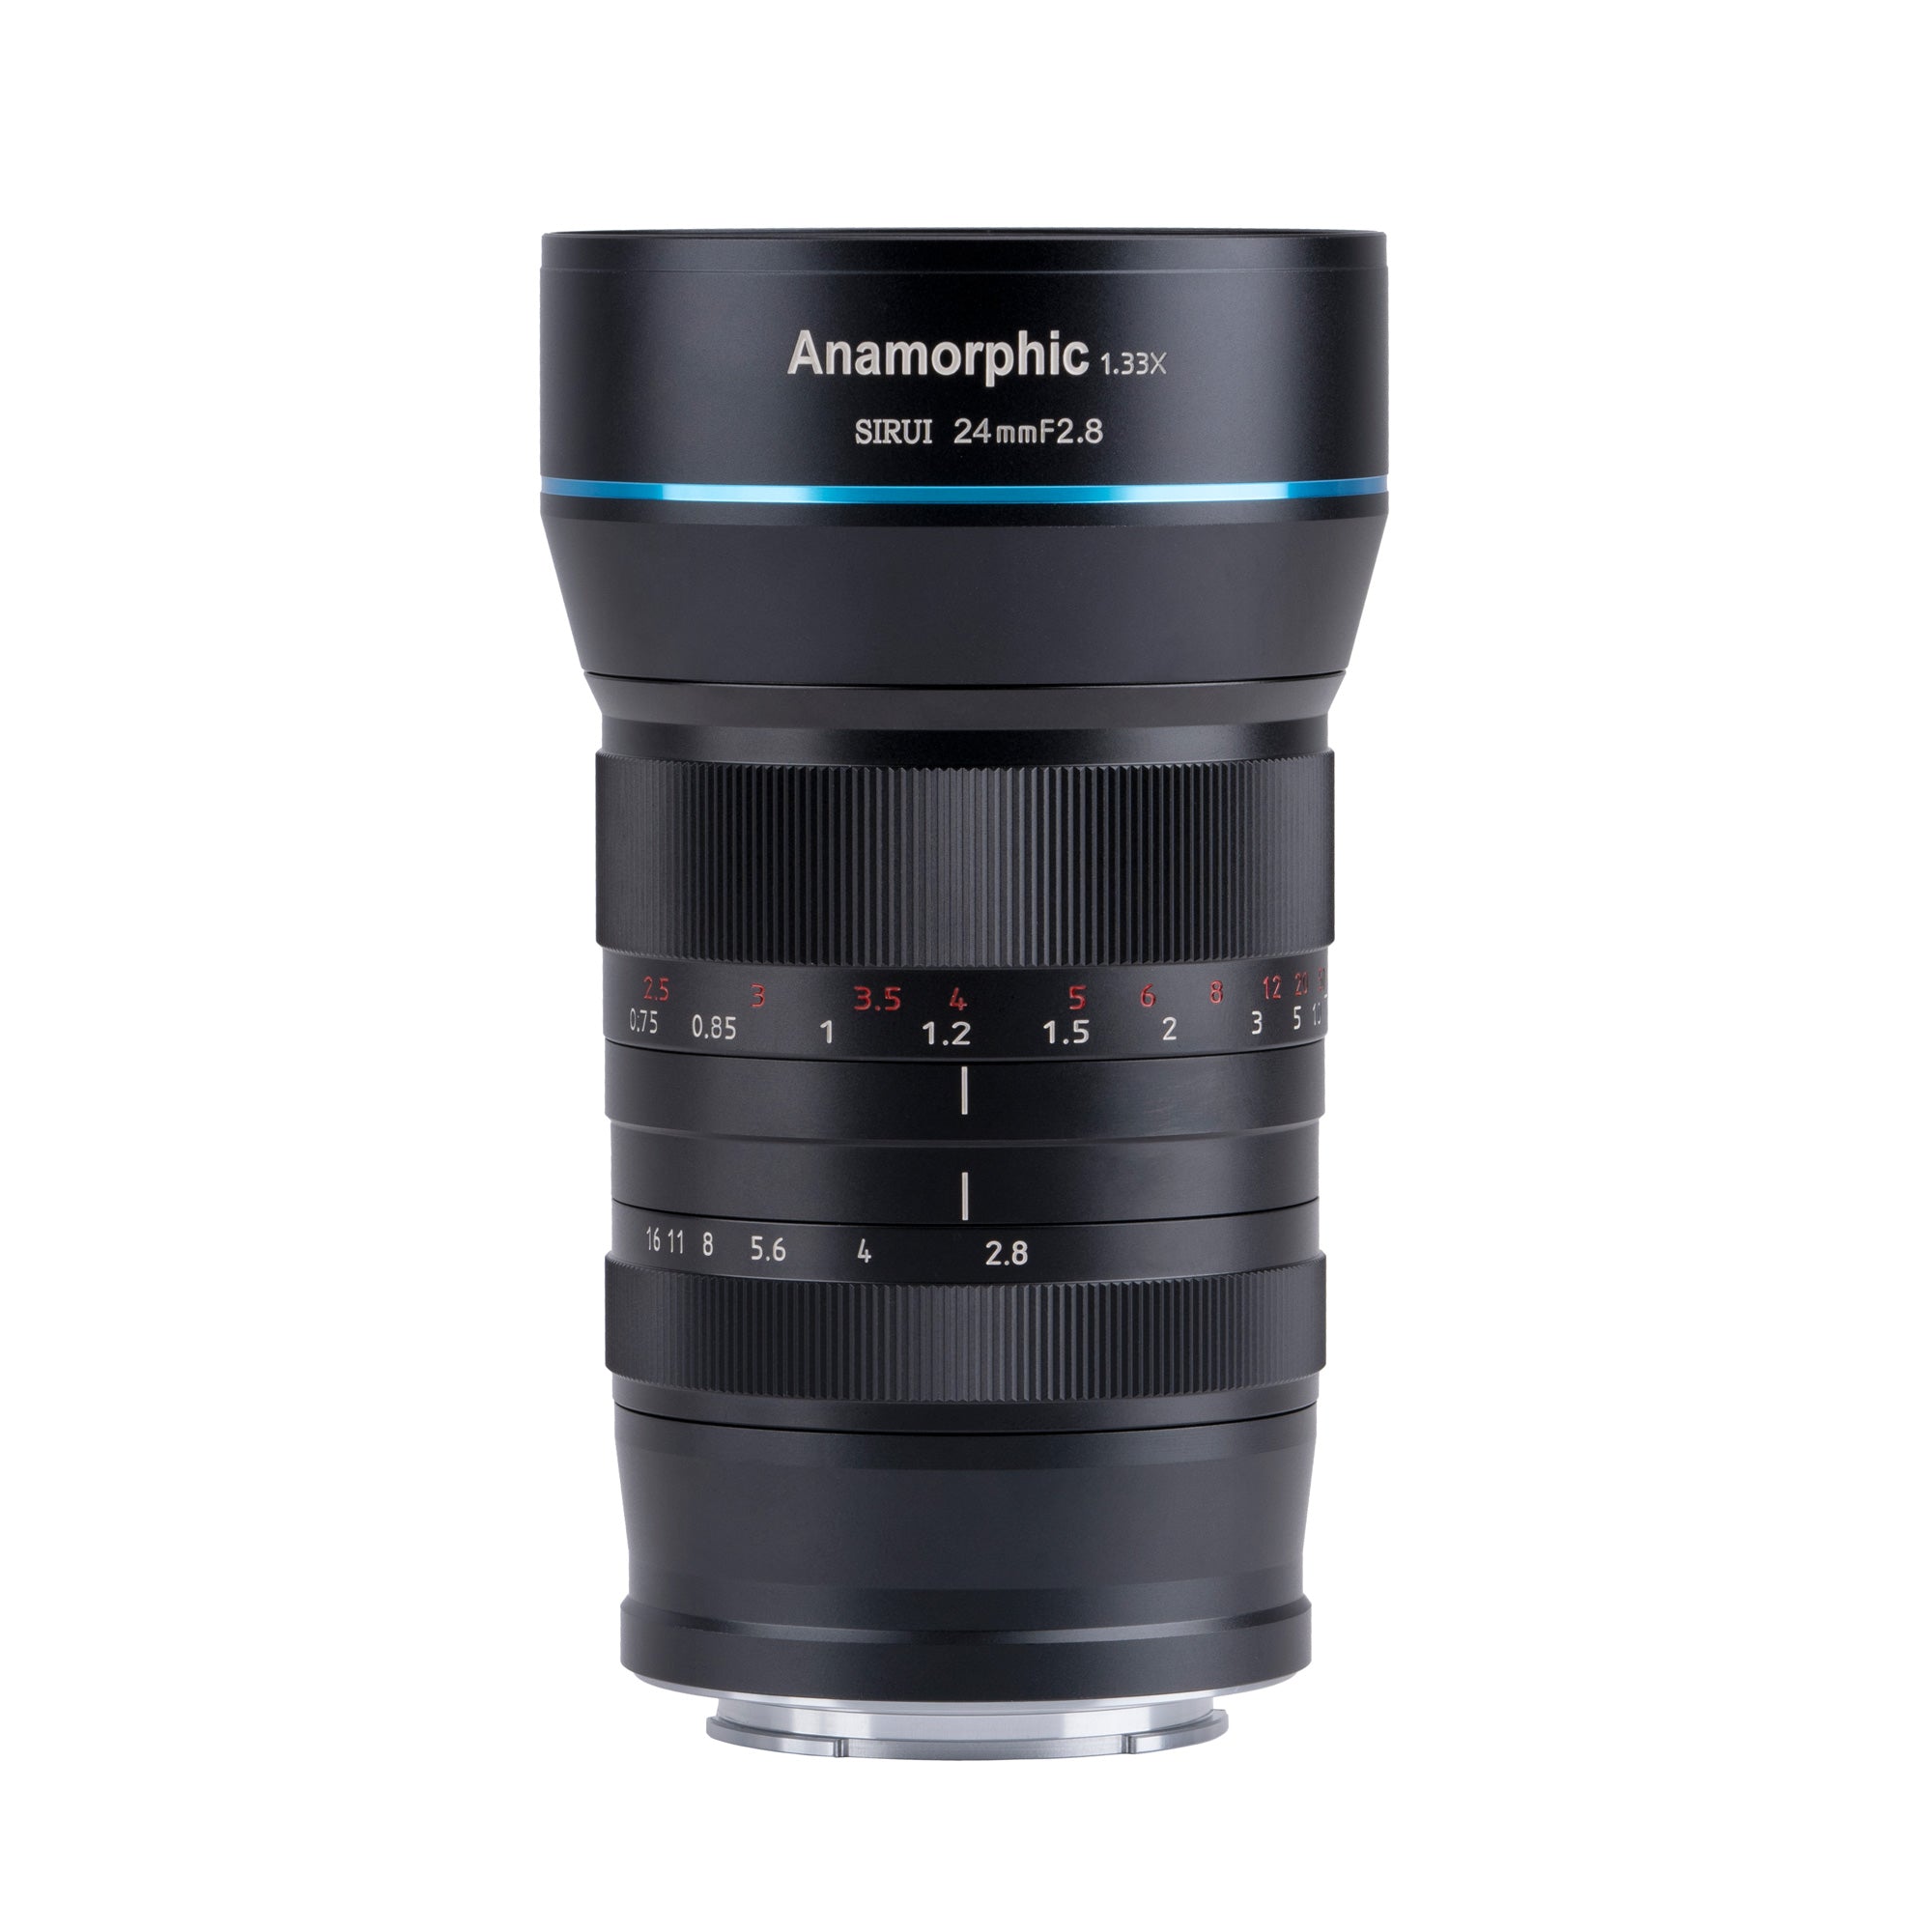 Sirui anamorphic 24mm f2.8 NikonZ - レンズ(単焦点)